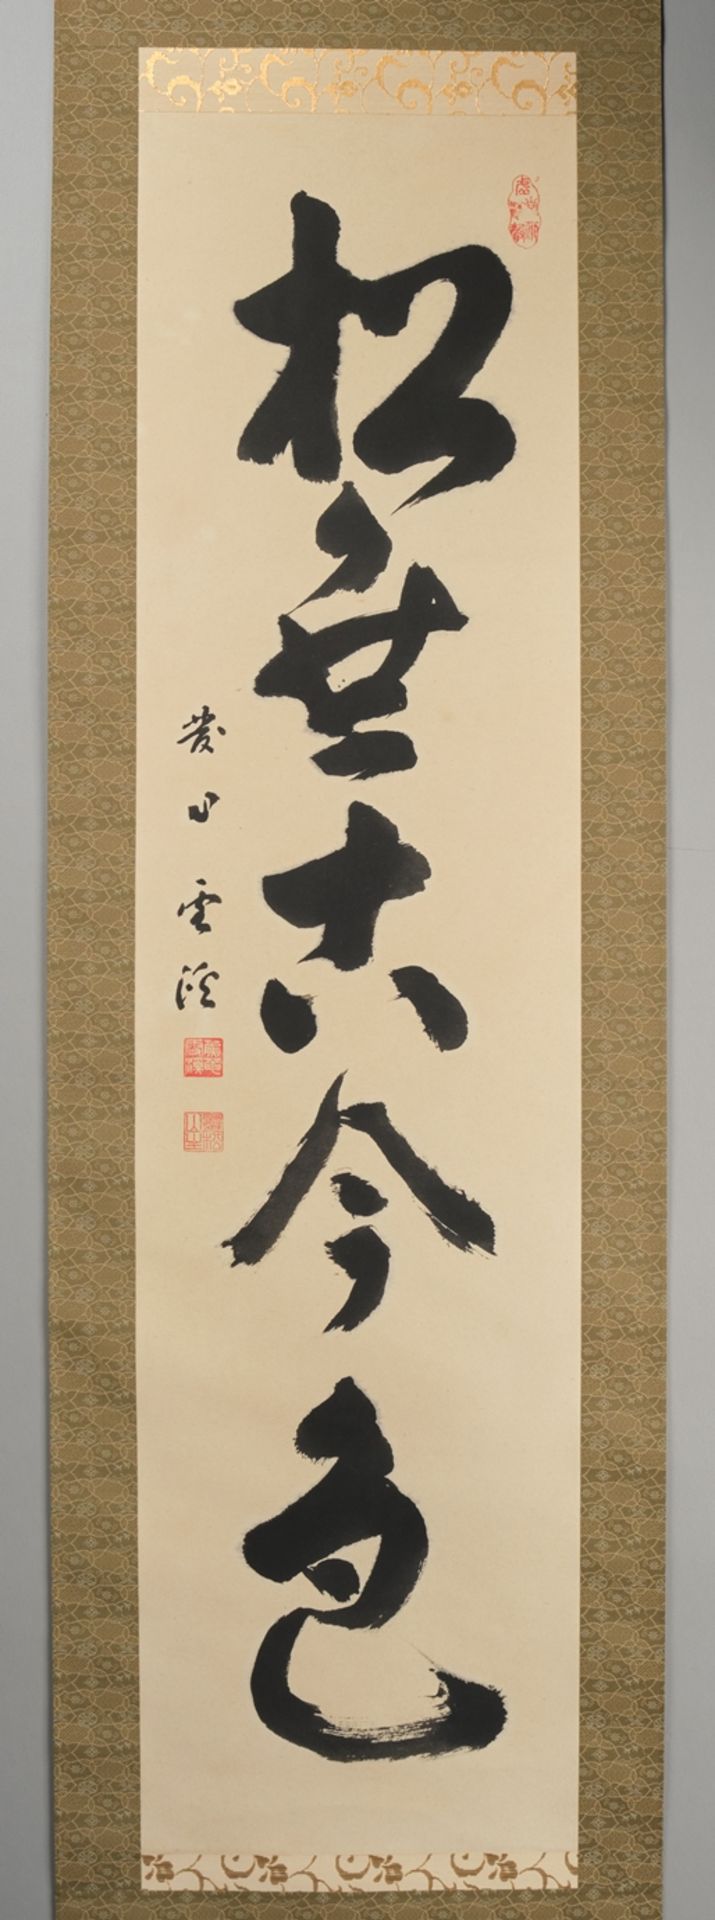 Konvolut 9 Hängerollen, China/Japan, 20. Jh., Kalligrafien, Steinabreibungen, u.a., diverse Formate - Bild 9 aus 10